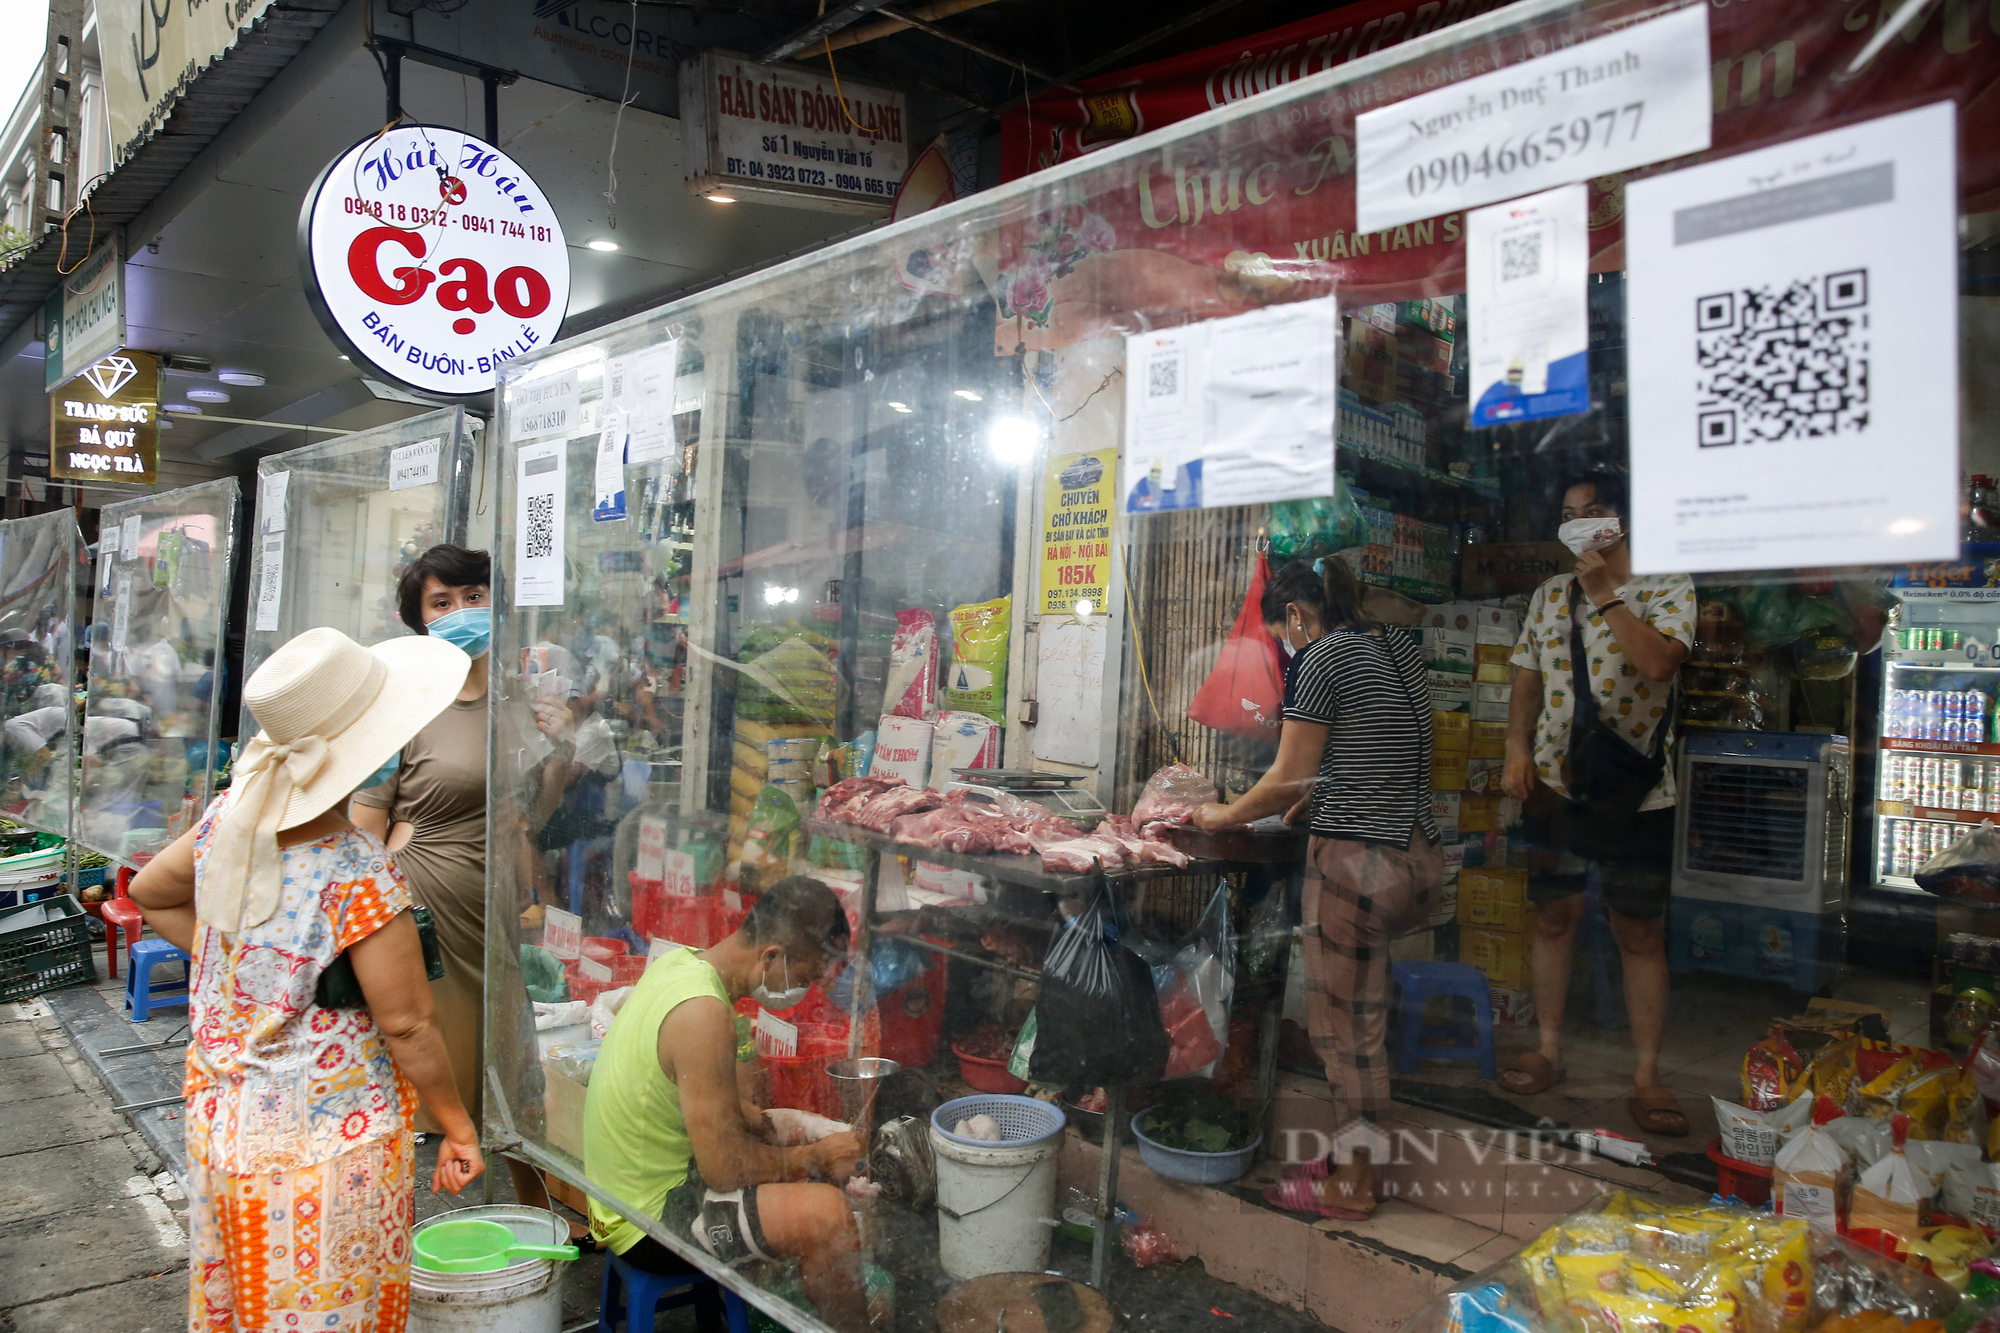 Hà Nội: Chợ dân sinh phố cổ siết chặt các biện pháp phòng, chống dịch Covid-19 - Ảnh 2.